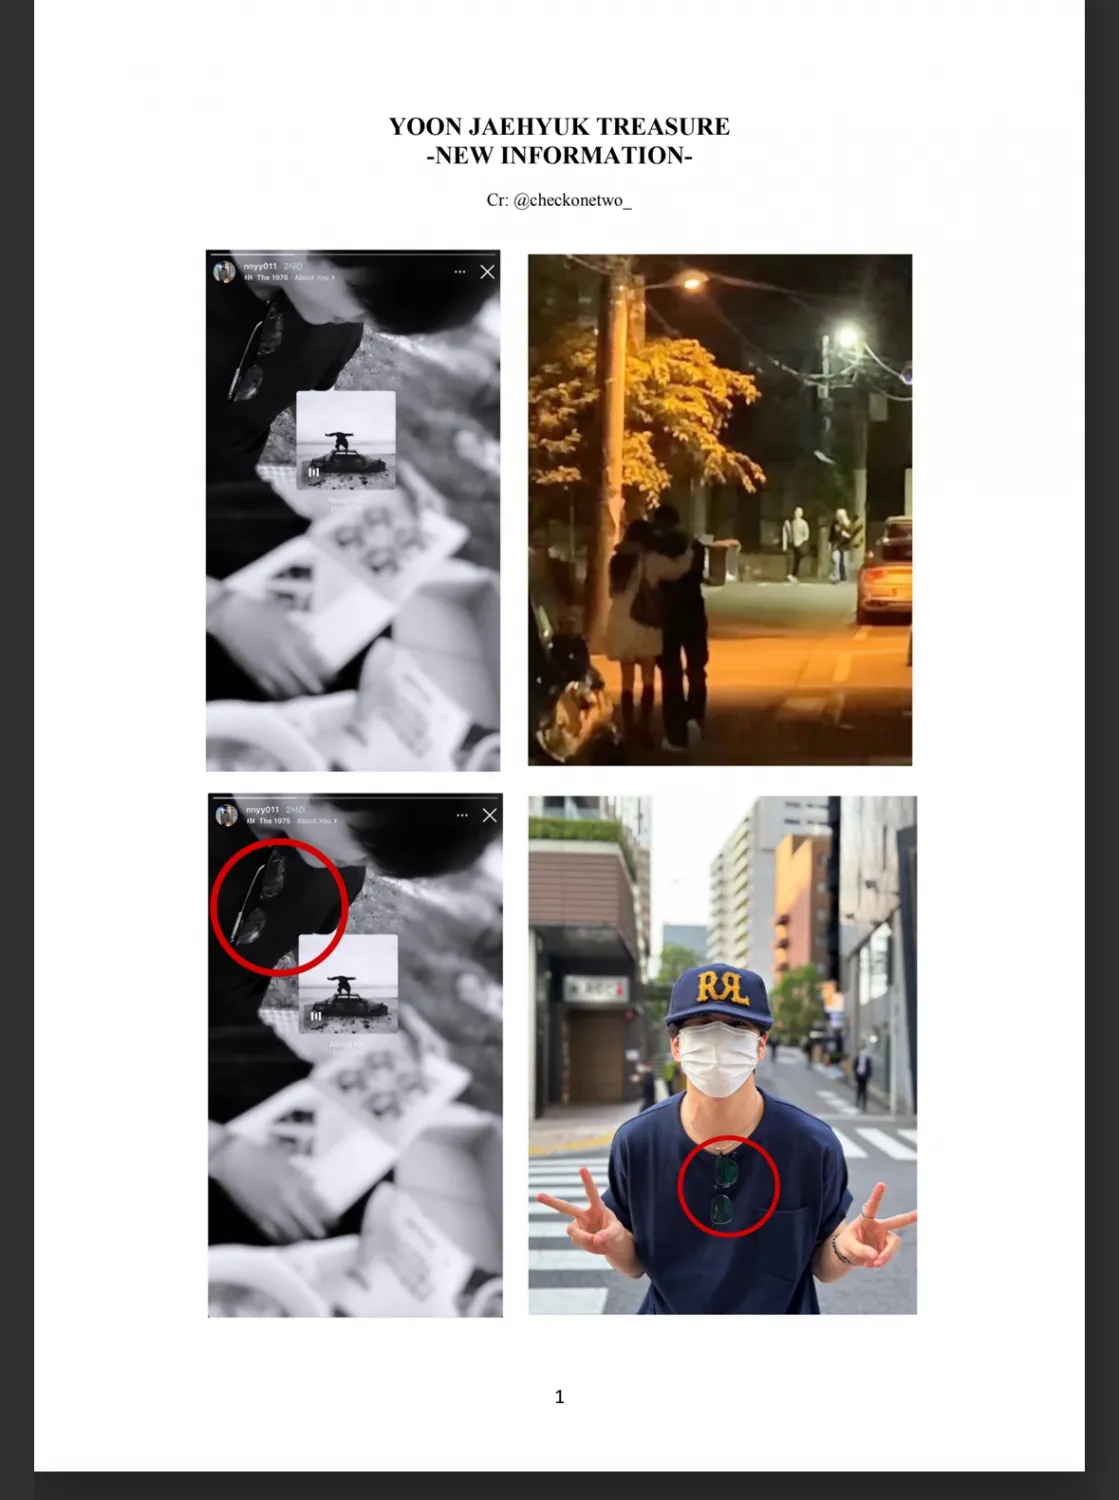 TREASURE Jaehyuk wird beschuldigt, in einer Beziehung zu sein + Fans legen Beweise vor